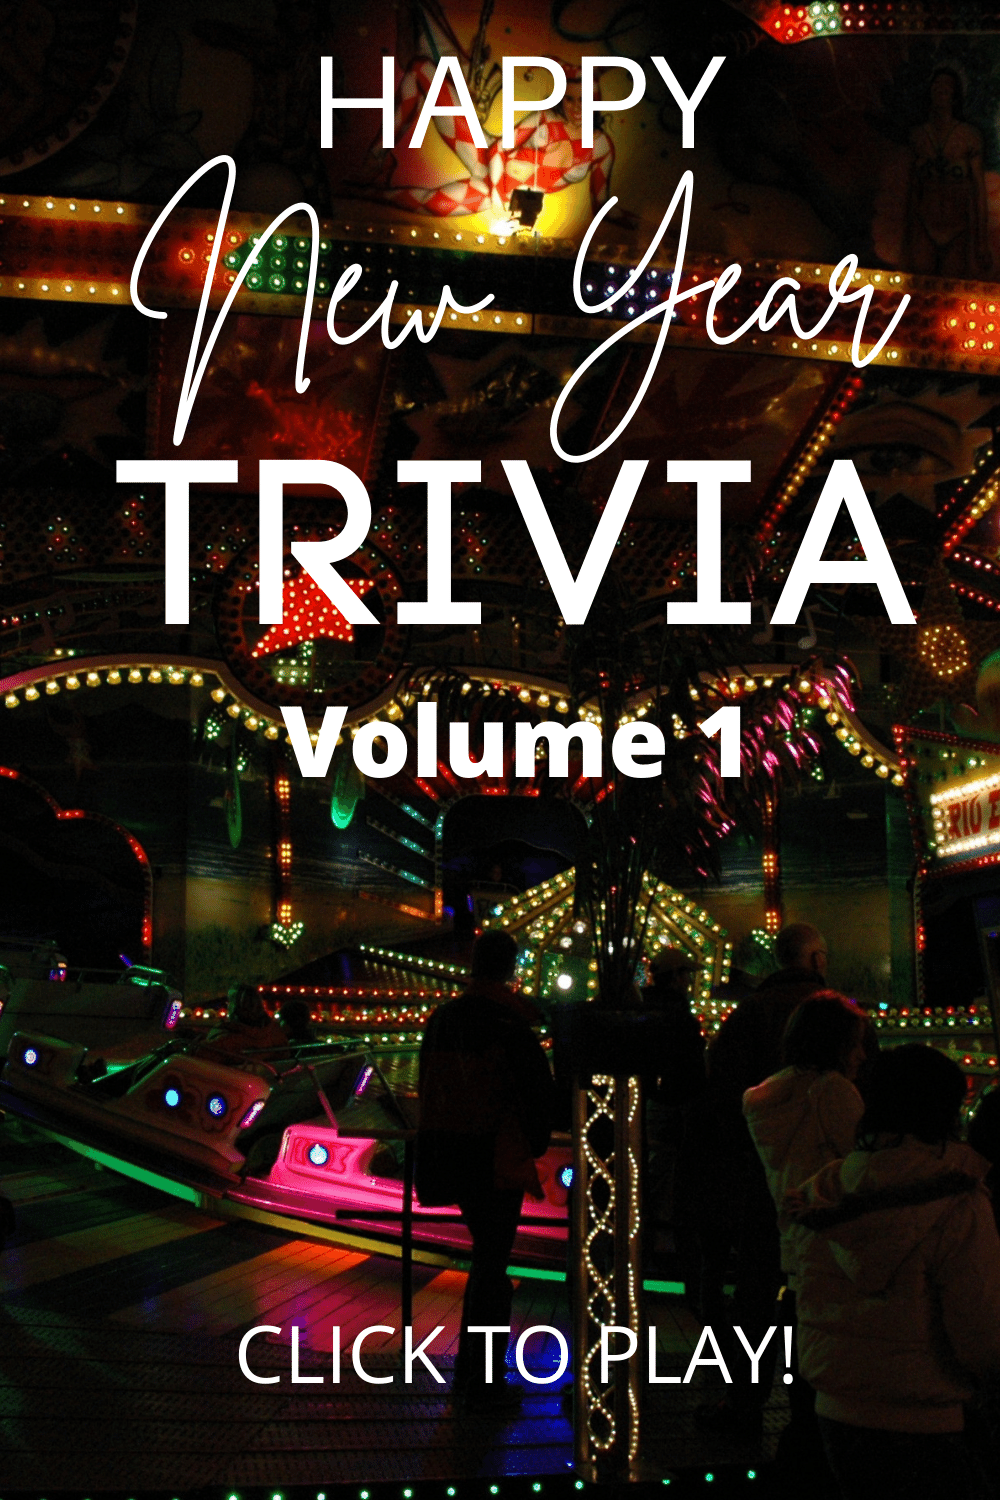 New Year's Trivia - Vol 1